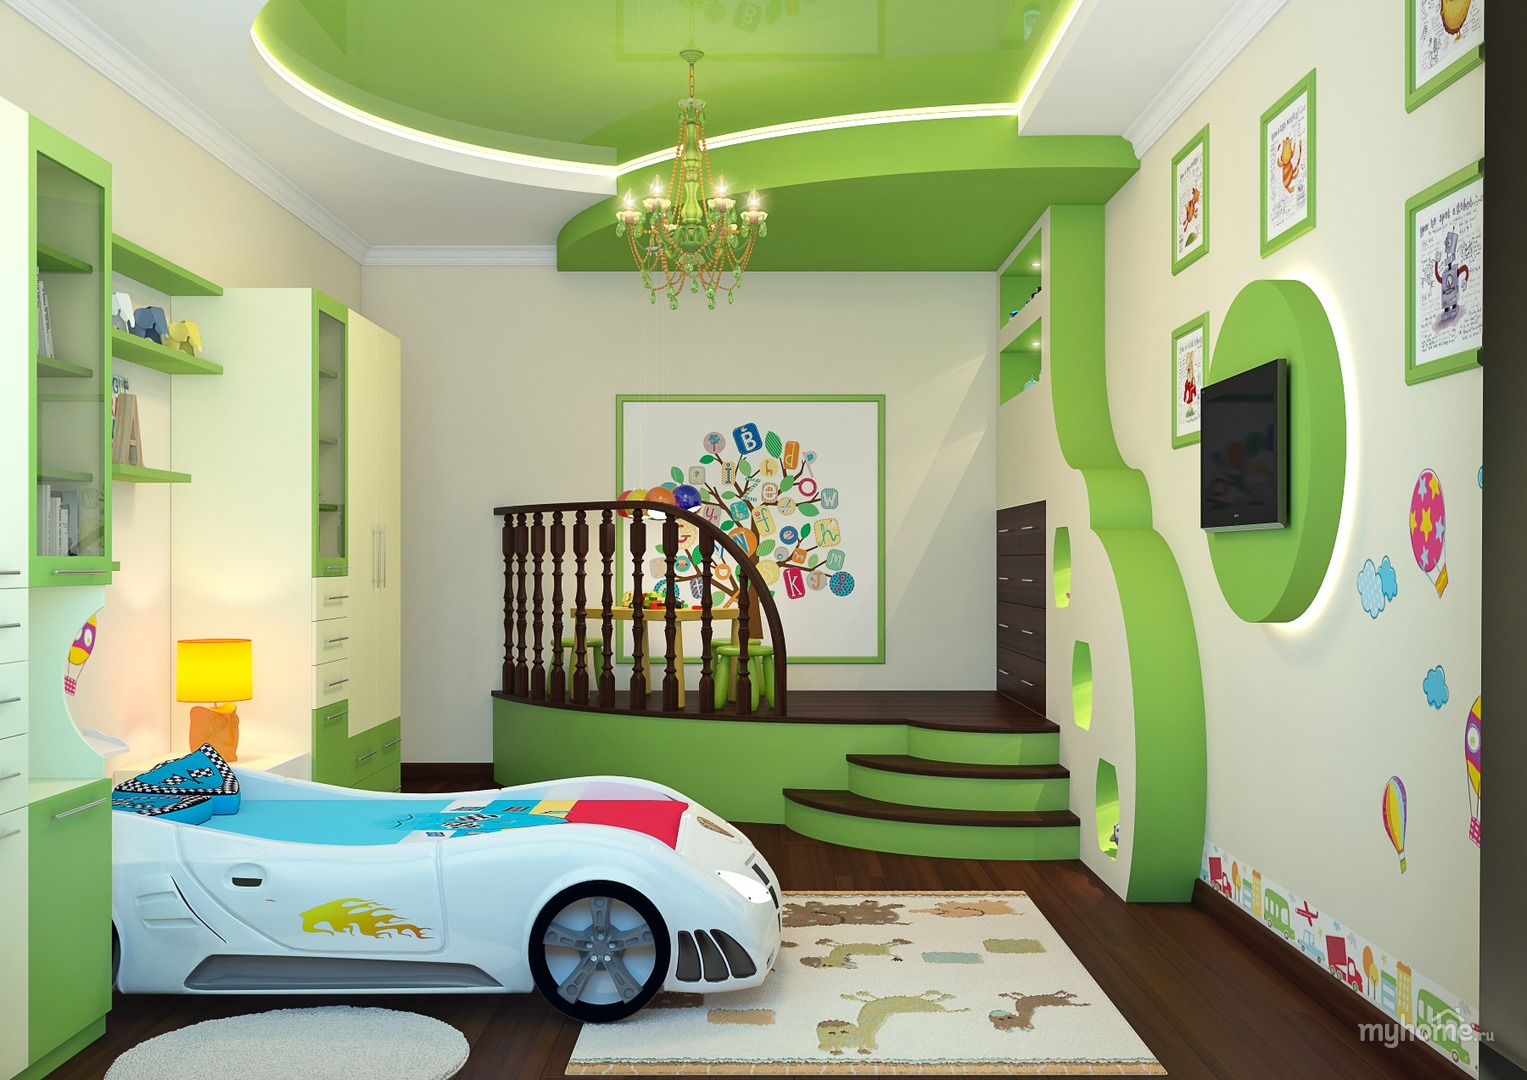 Обои в детскую комнату для мальчиков: виды, тематика, цвета, дизайн, фотообои | Новый взгляд на дизайн детских комнат